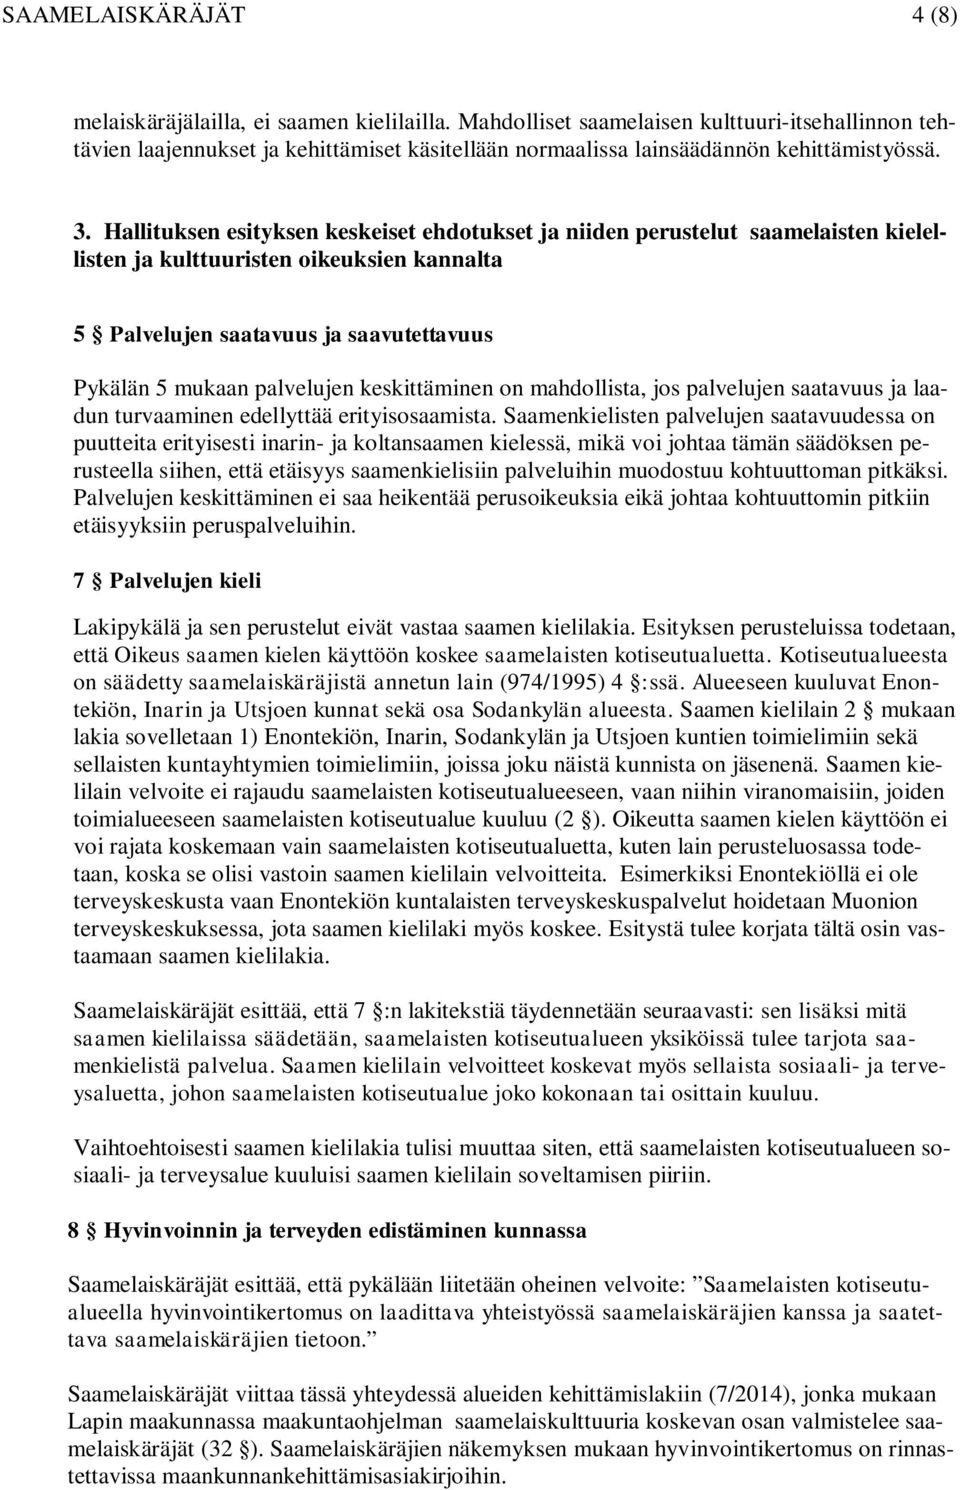 Hallituksen esityksen keskeiset ehdotukset ja niiden perustelut saamelaisten kielellisten ja kulttuuristen oikeuksien kannalta 5 Palvelujen saatavuus ja saavutettavuus Pykälän 5 mukaan palvelujen